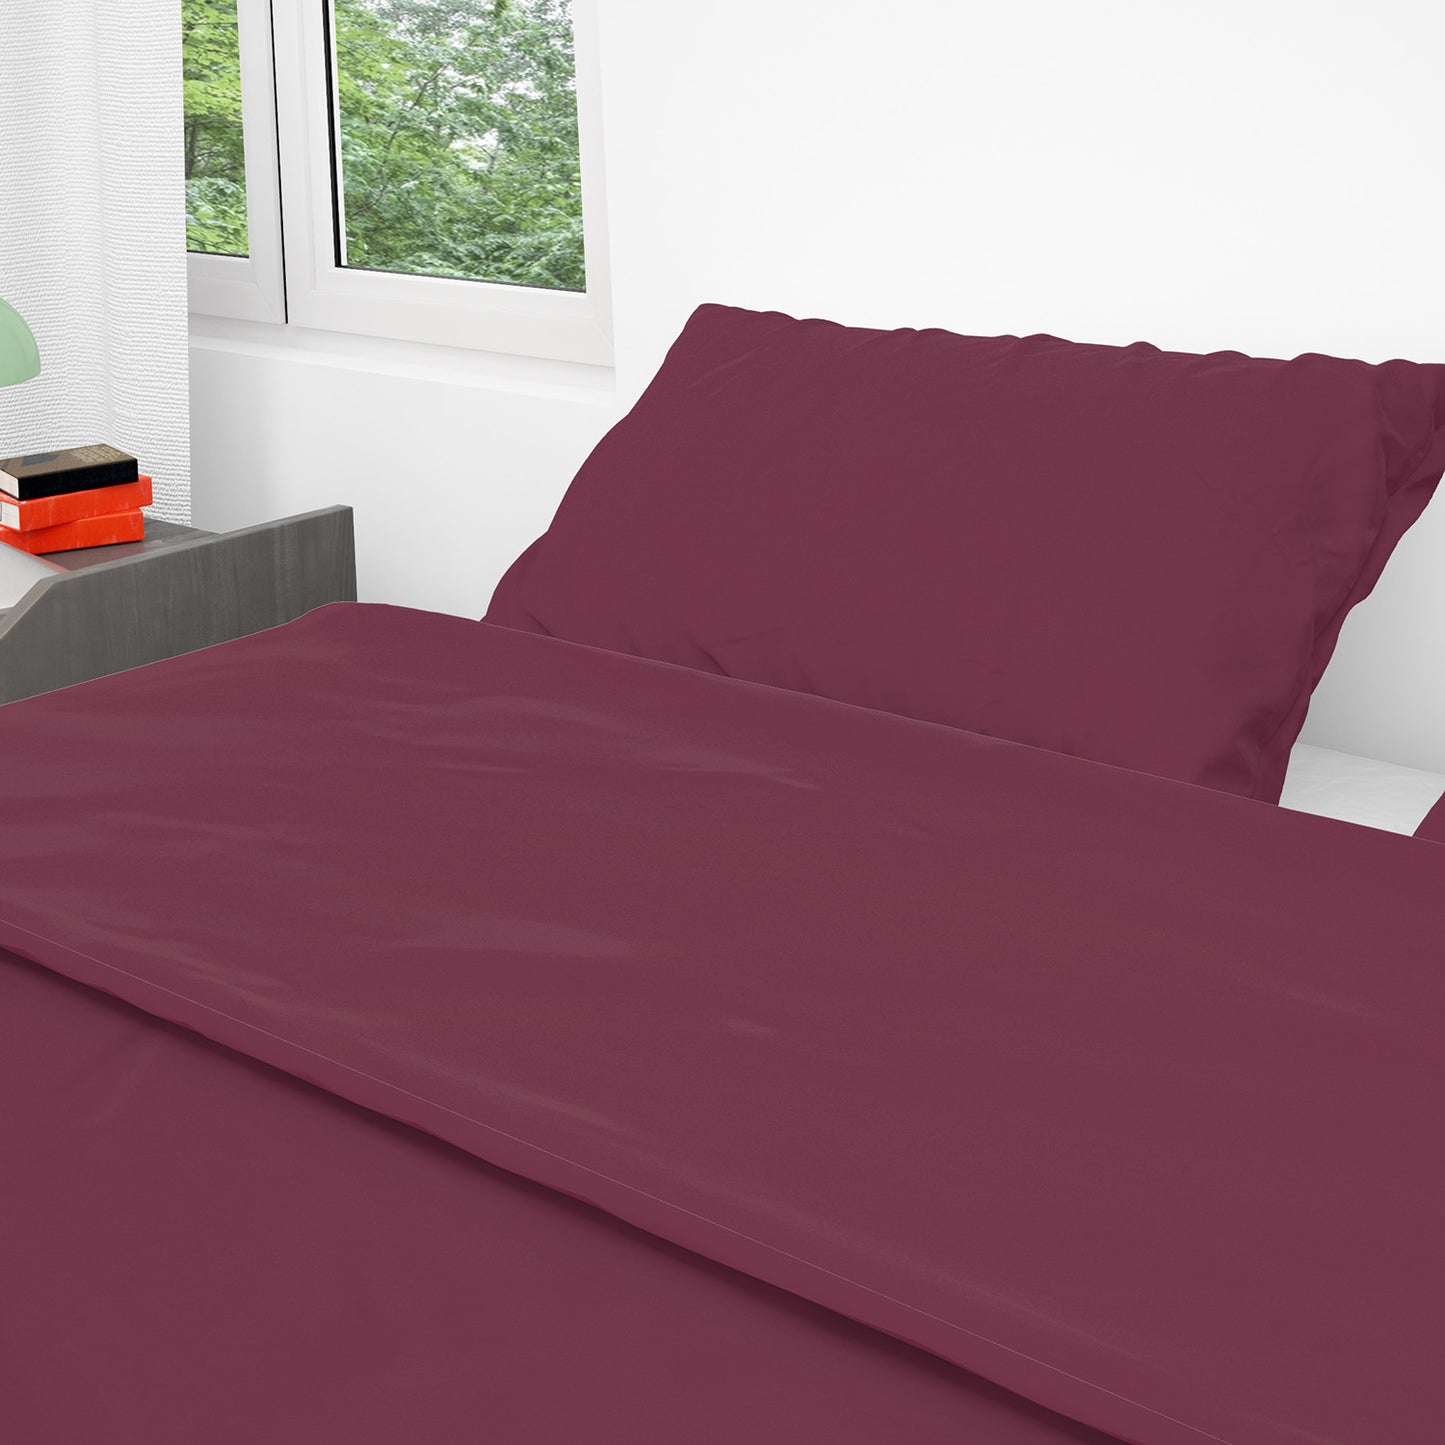 Bed Sheet Set - Multiple Sizes - BD79